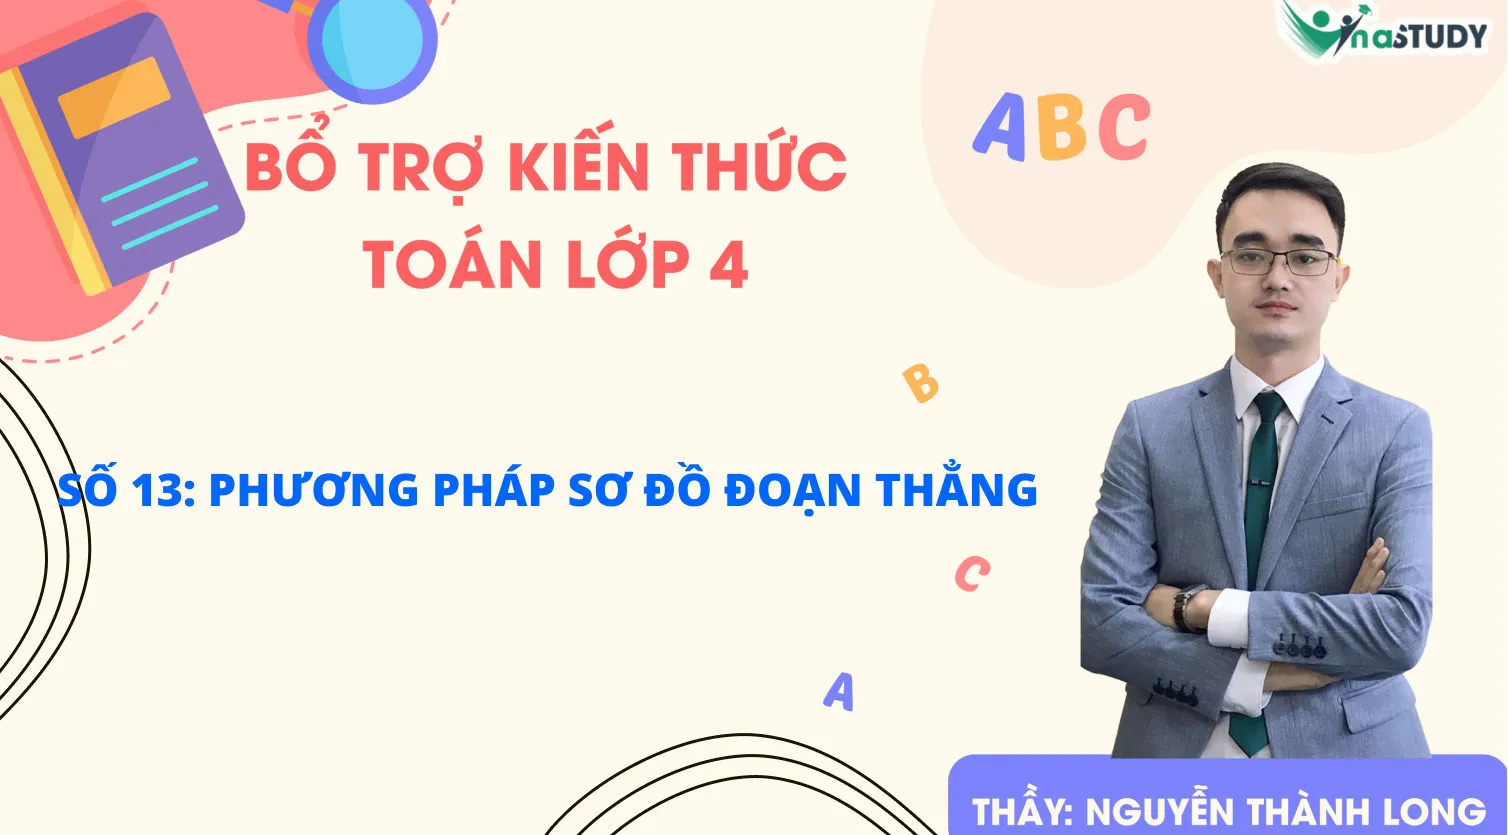 Bổ trợ kiến thức Toán lớp 4 - Vinastudy - Số 13: Phương pháp sơ đồ đoạn thẳng - Thầy Nguyễn Thành Long